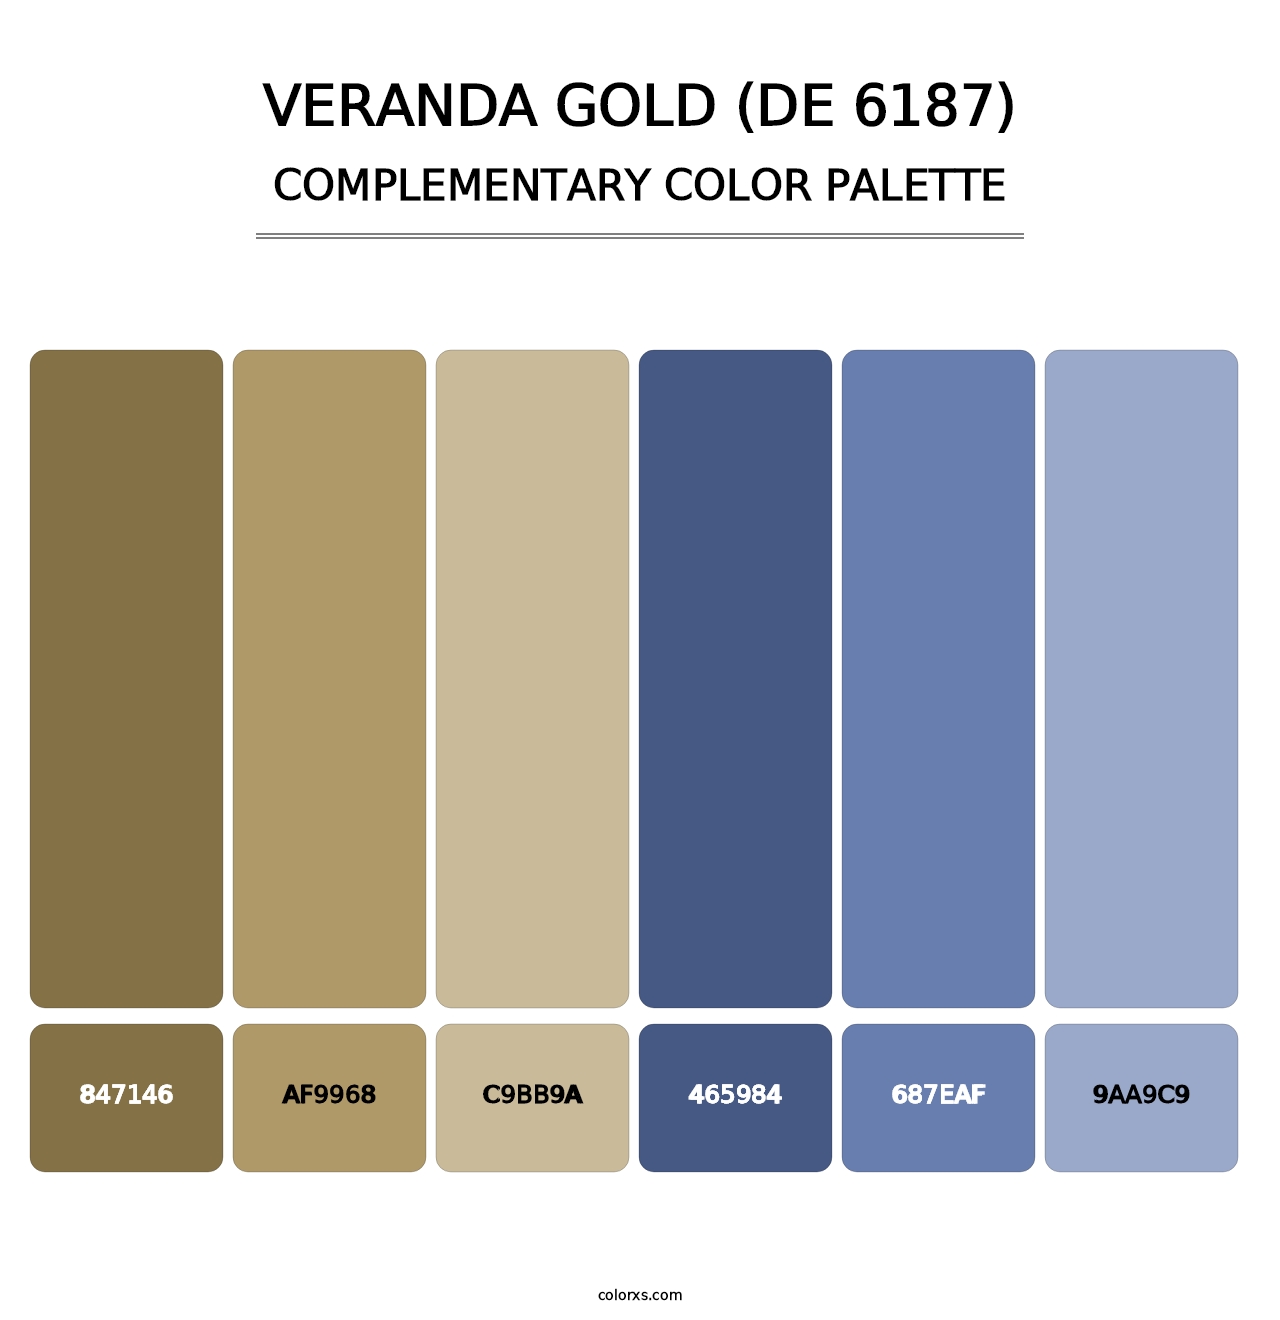 Veranda Gold (DE 6187) - Complementary Color Palette